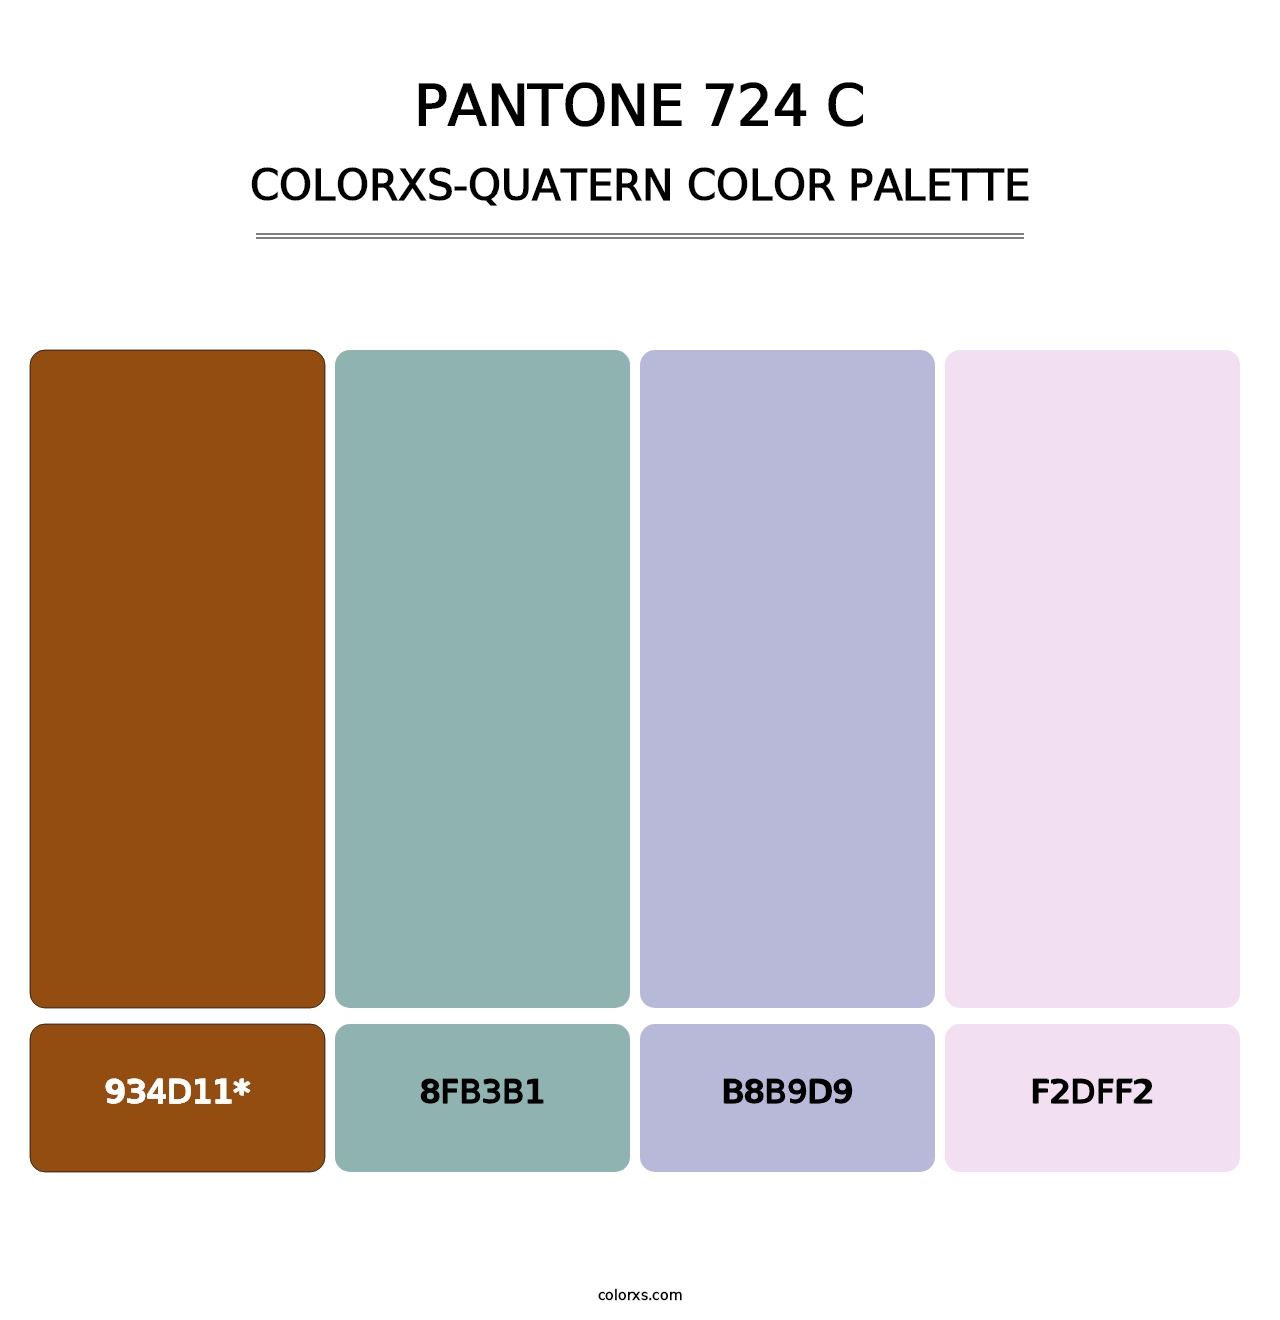 PANTONE 724 C - Colorxs Quatern Palette